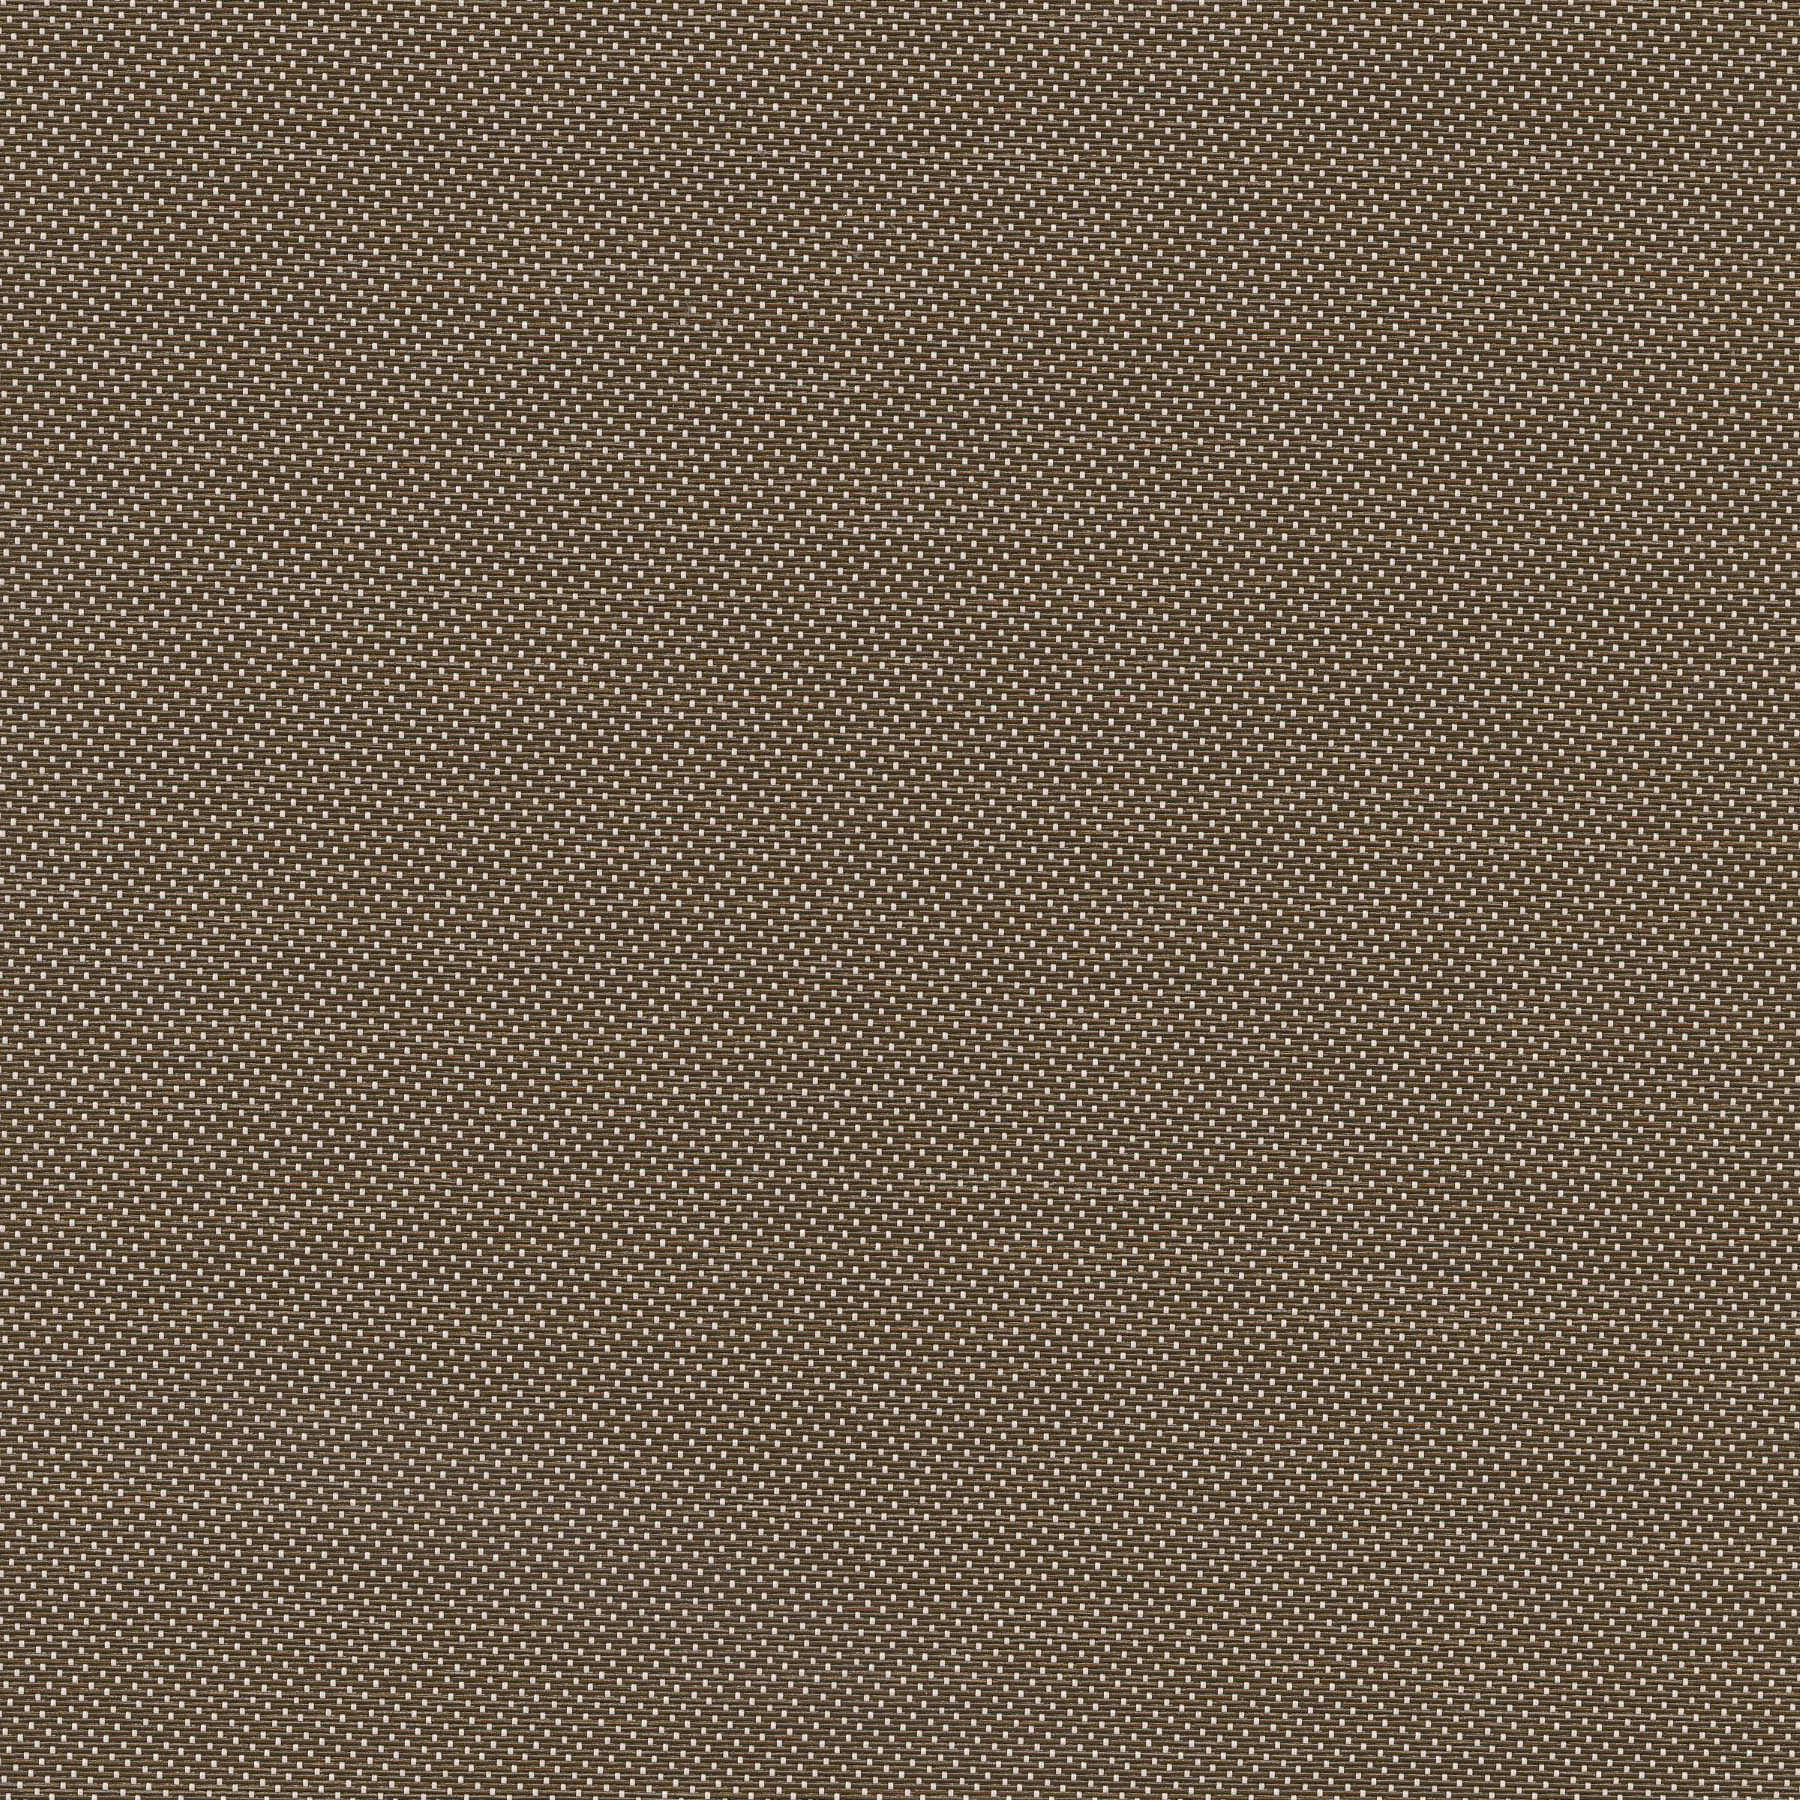 Altex - Tissu - SHEERWEAVE 2701 - Bronze/Blanc - 154